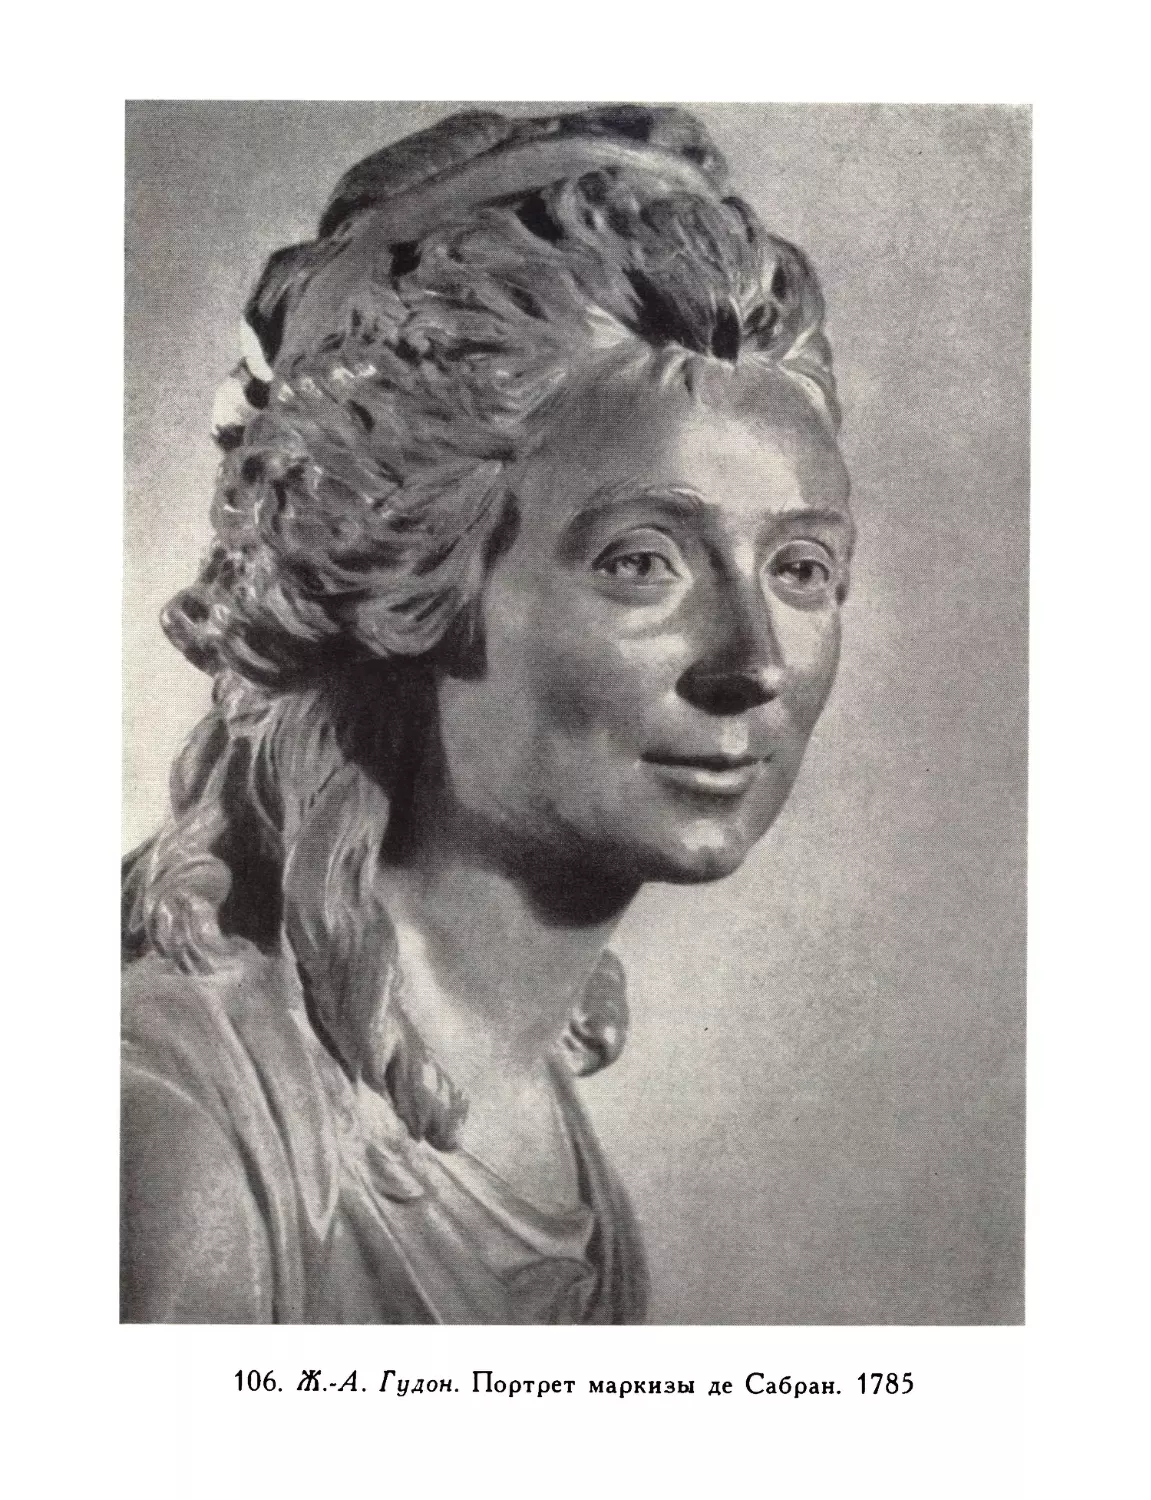 106.  Ж.-А.  Гудон.  Портрет  маркизы  де  Сабран.  1785.  Музей  в  Эйзенахе